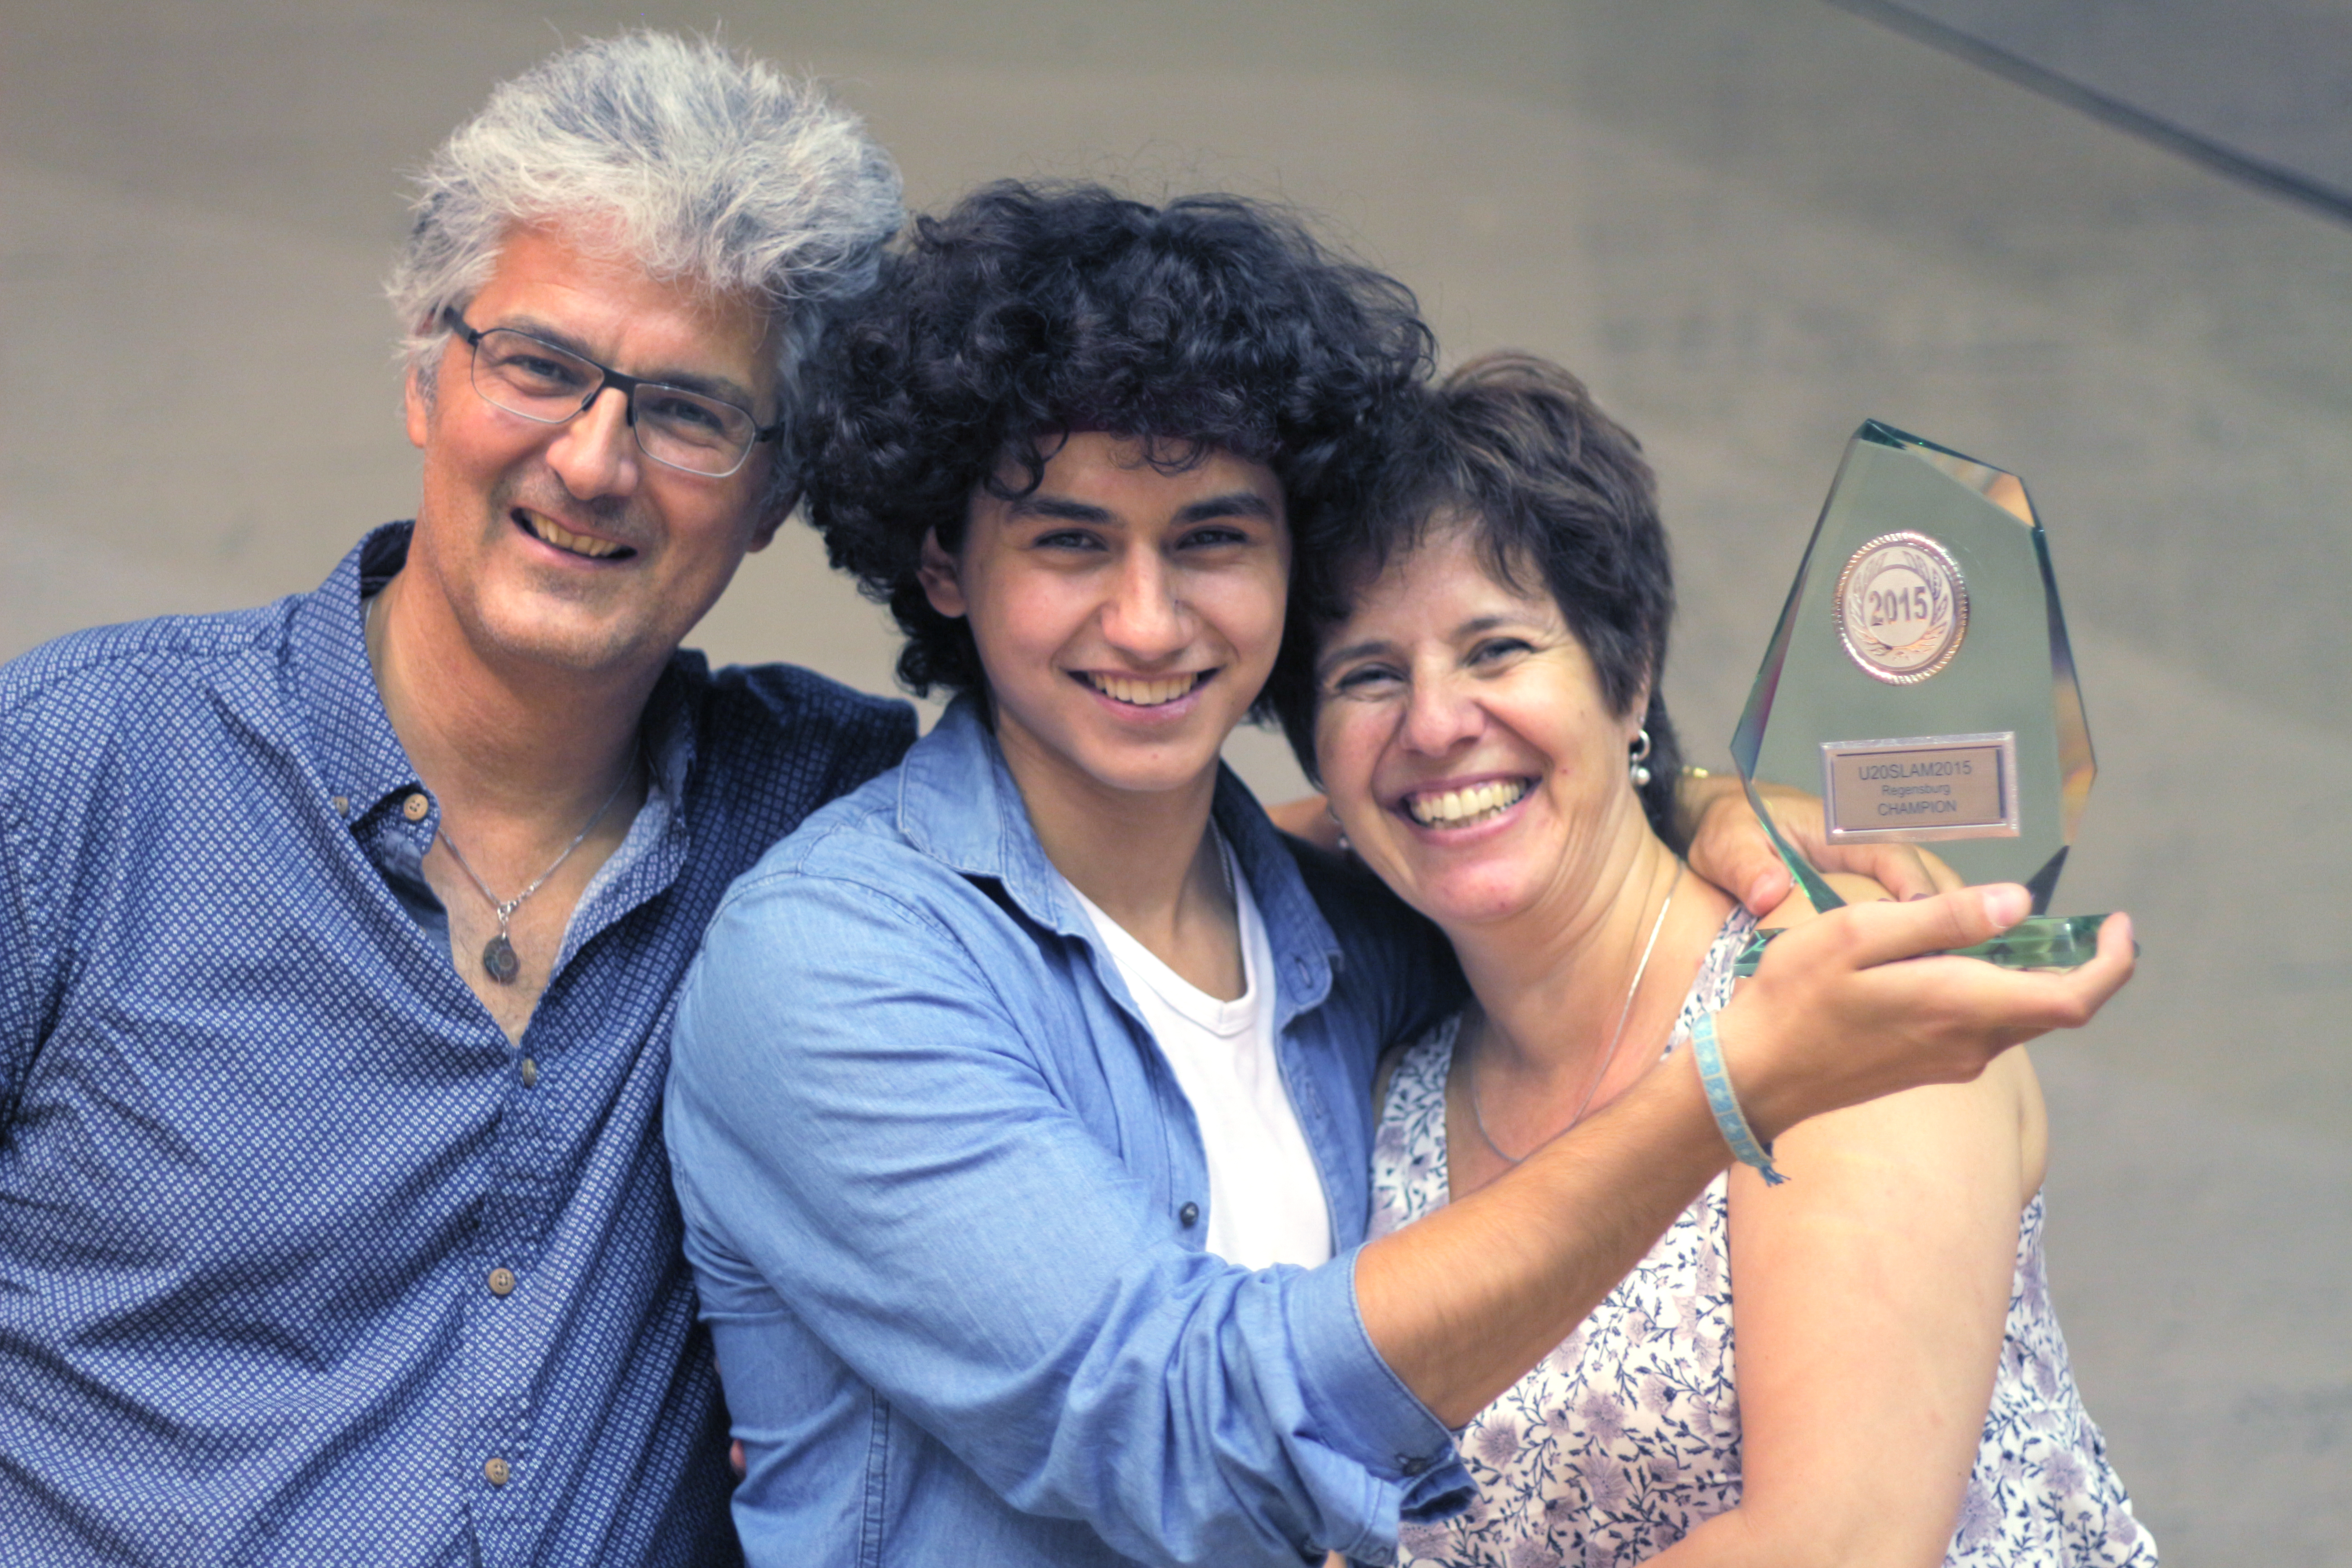 Jonas Balmer mit dem u20 Titel 2015 und seinen Eltern